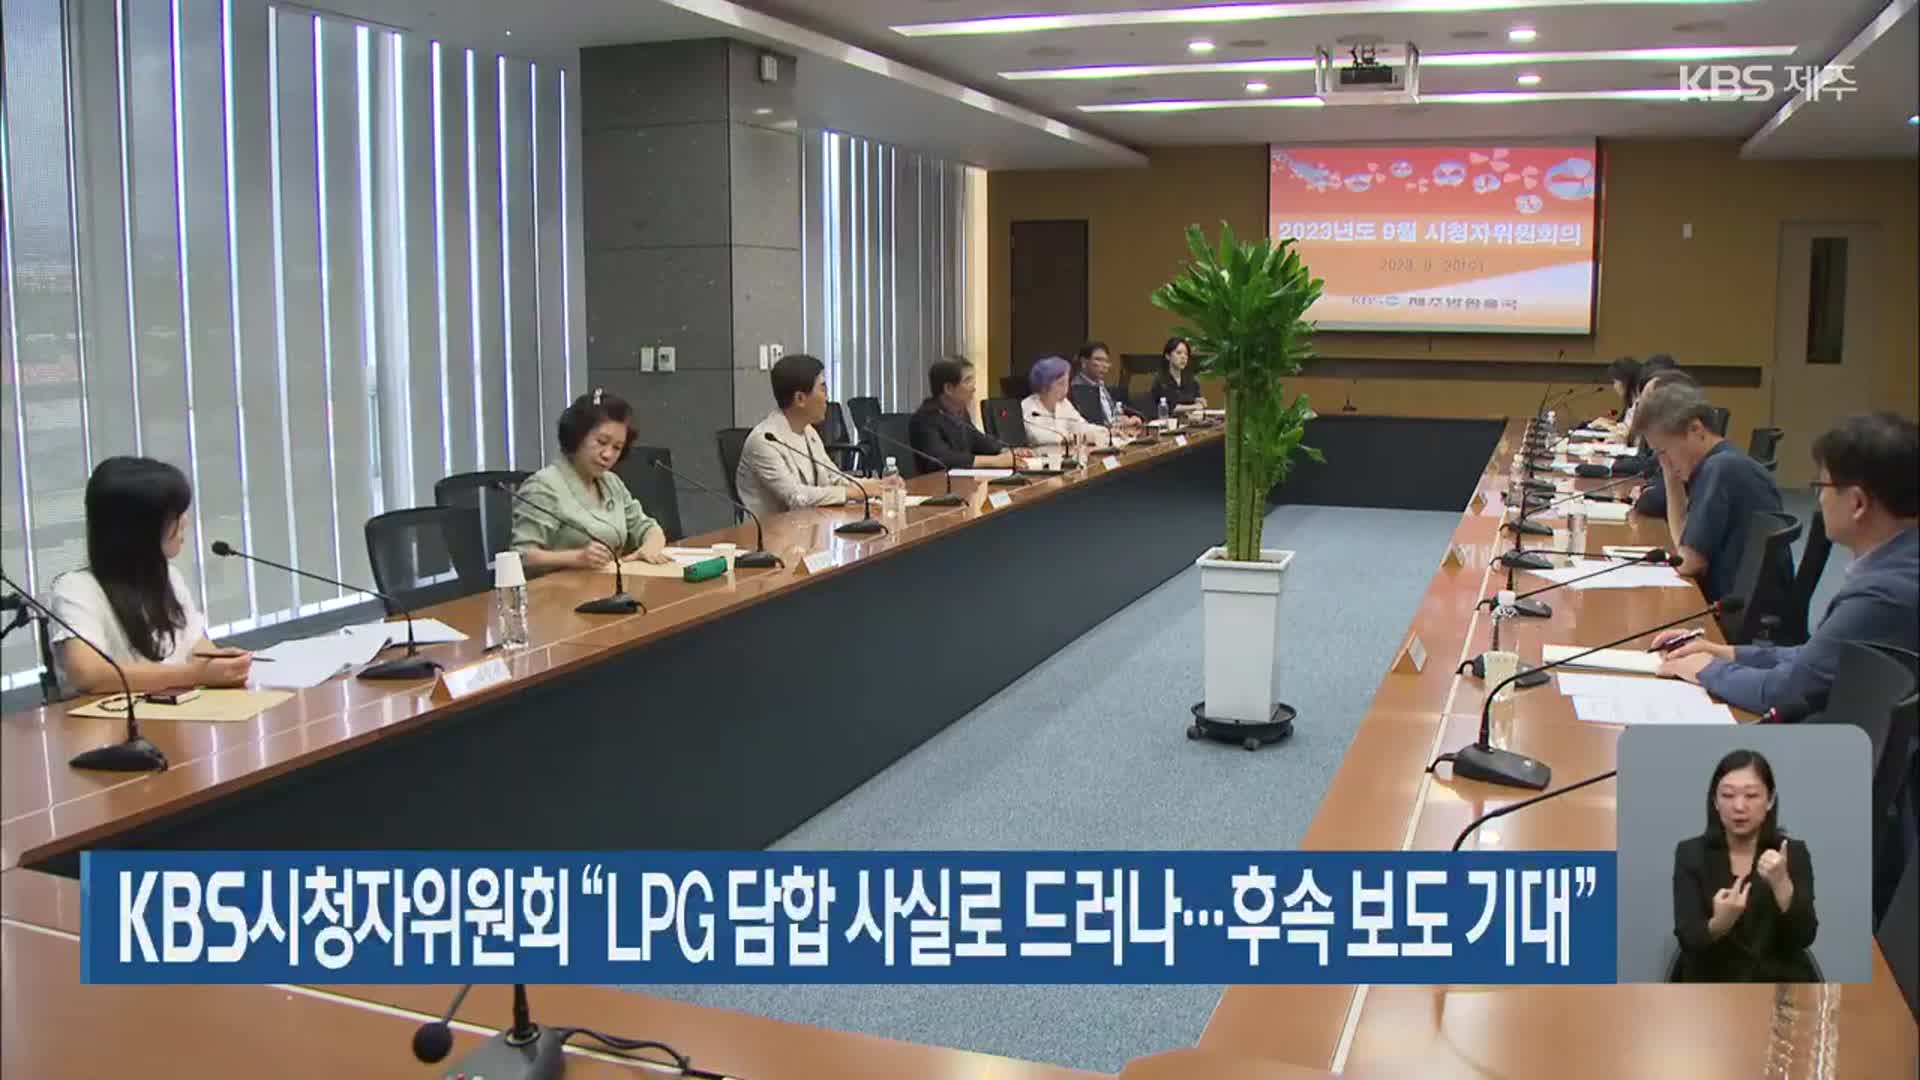 KBS시청자위원회 “LPG 담합 사실로 드러나…후속 보도 기대”